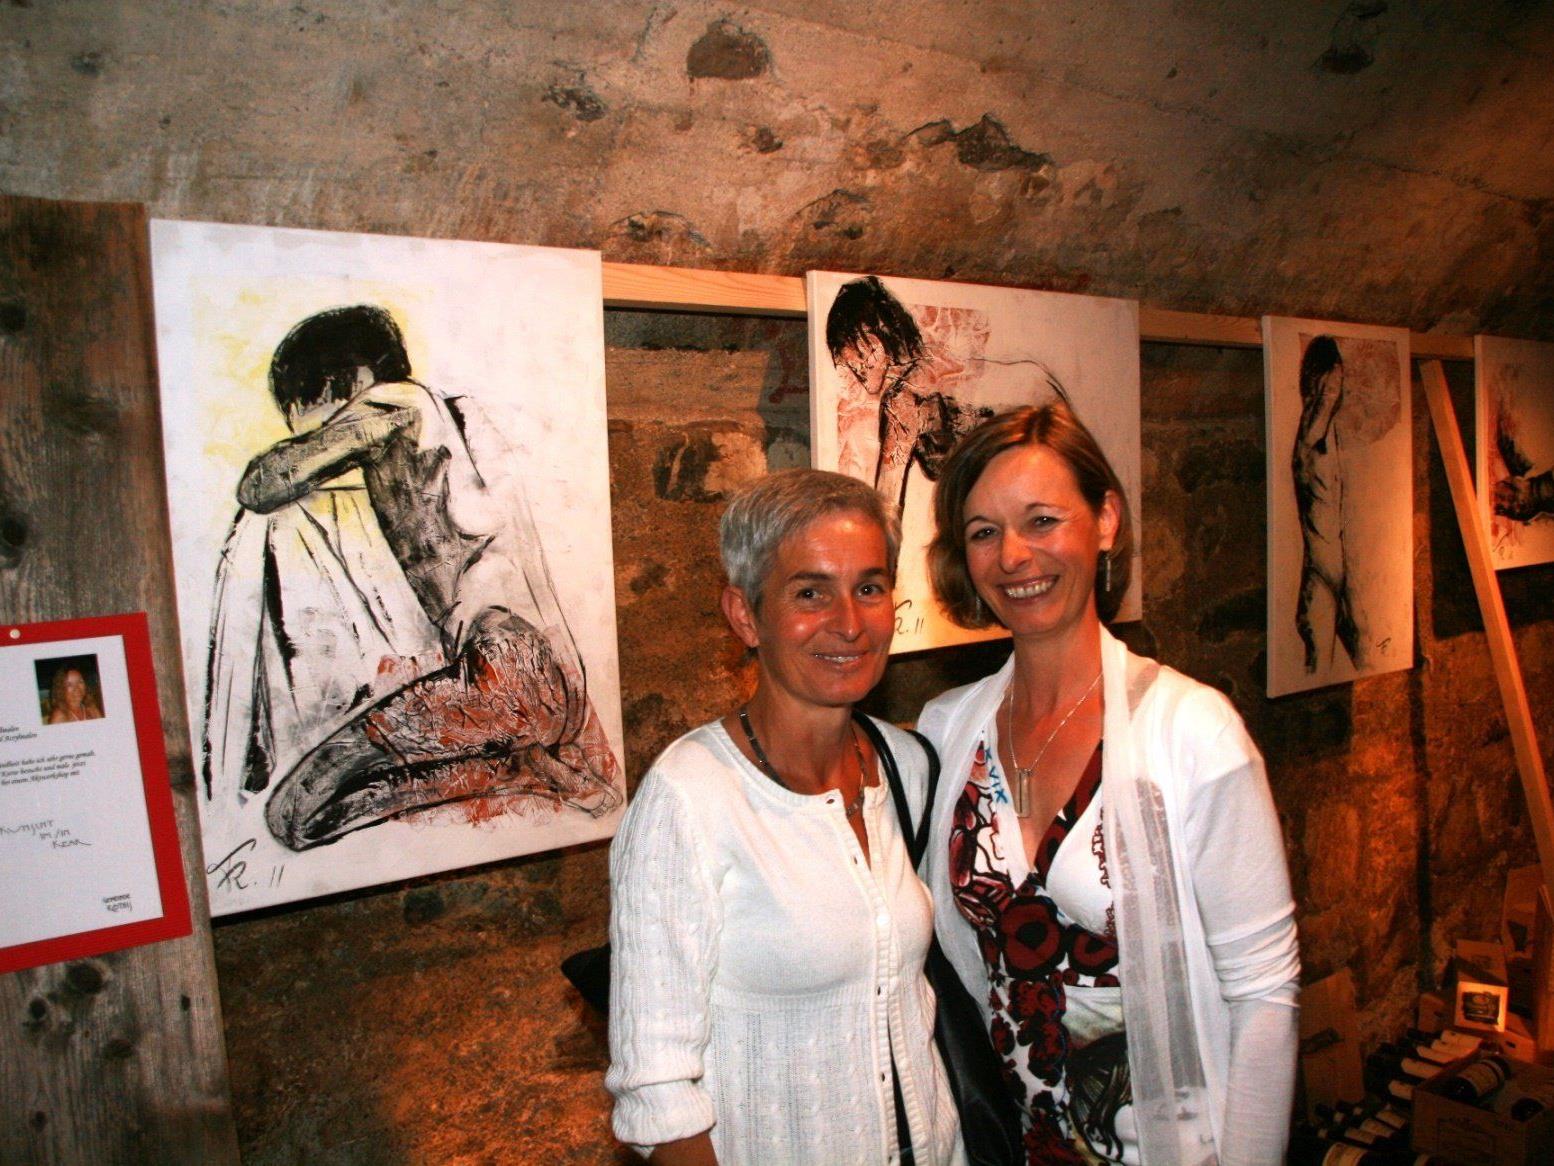 Hobby Künstler aus Sulz und Röthis präsentieren ihre Werke in sechs altertümlichen Keller.